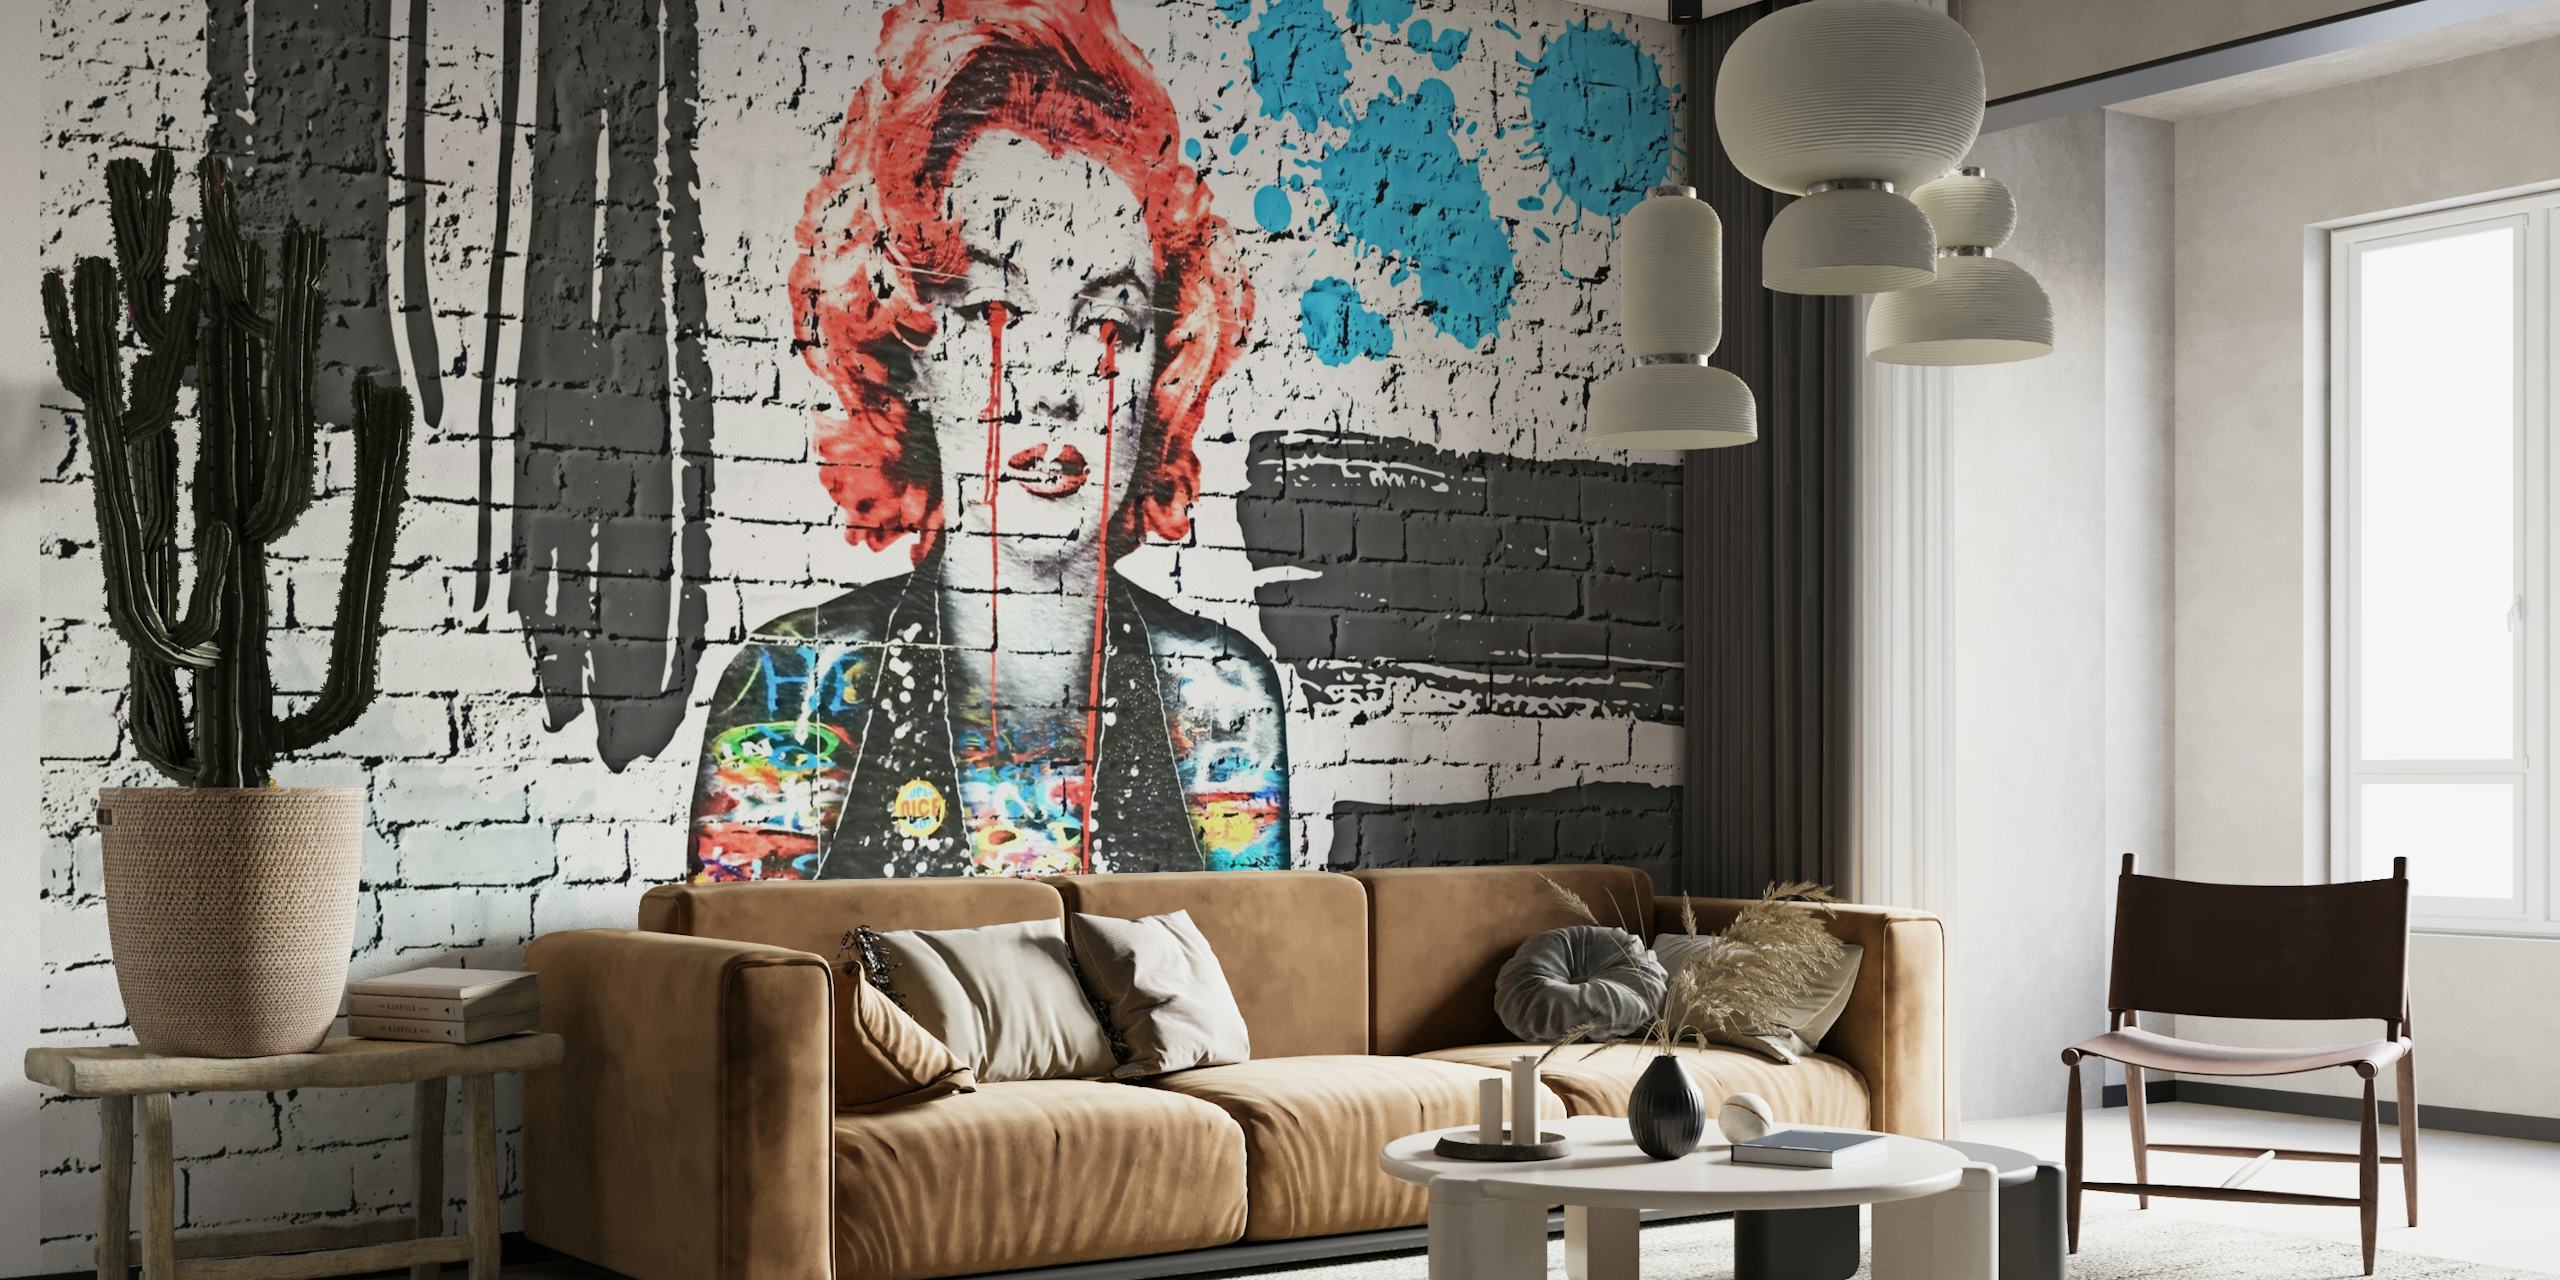 Wandbild im Graffiti-Stil mit lebendigen Pop-Art-Elementen auf Ziegelhintergrund für moderne Innenräume.